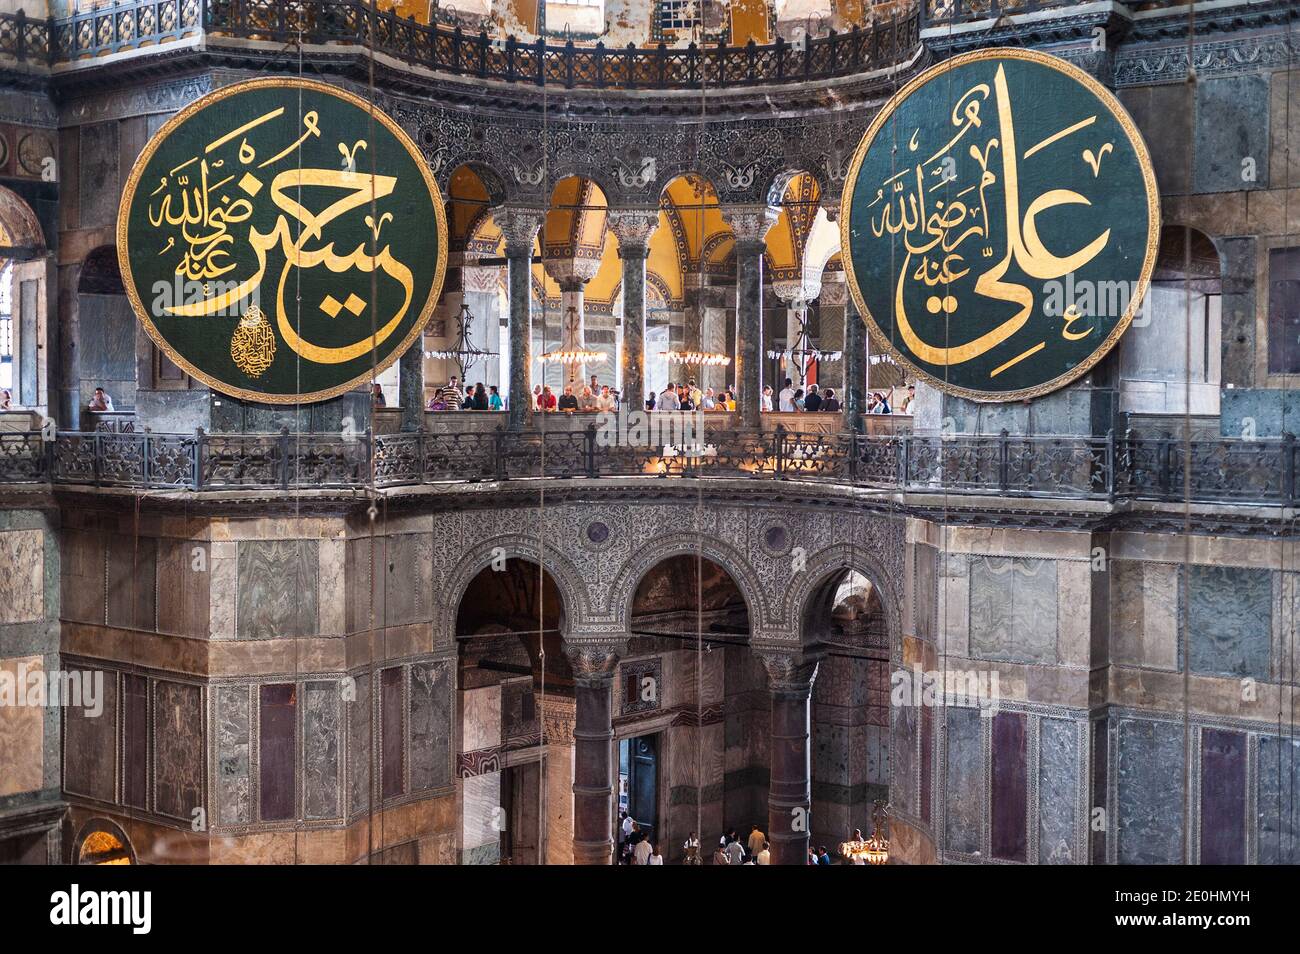 Architecture byzantine de l'intérieur de Sainte-Sophie Aya Sophia in Sultanahmet Istanbul avec médaillon portant la calligraphie arabe de l'empire ottoman Banque D'Images